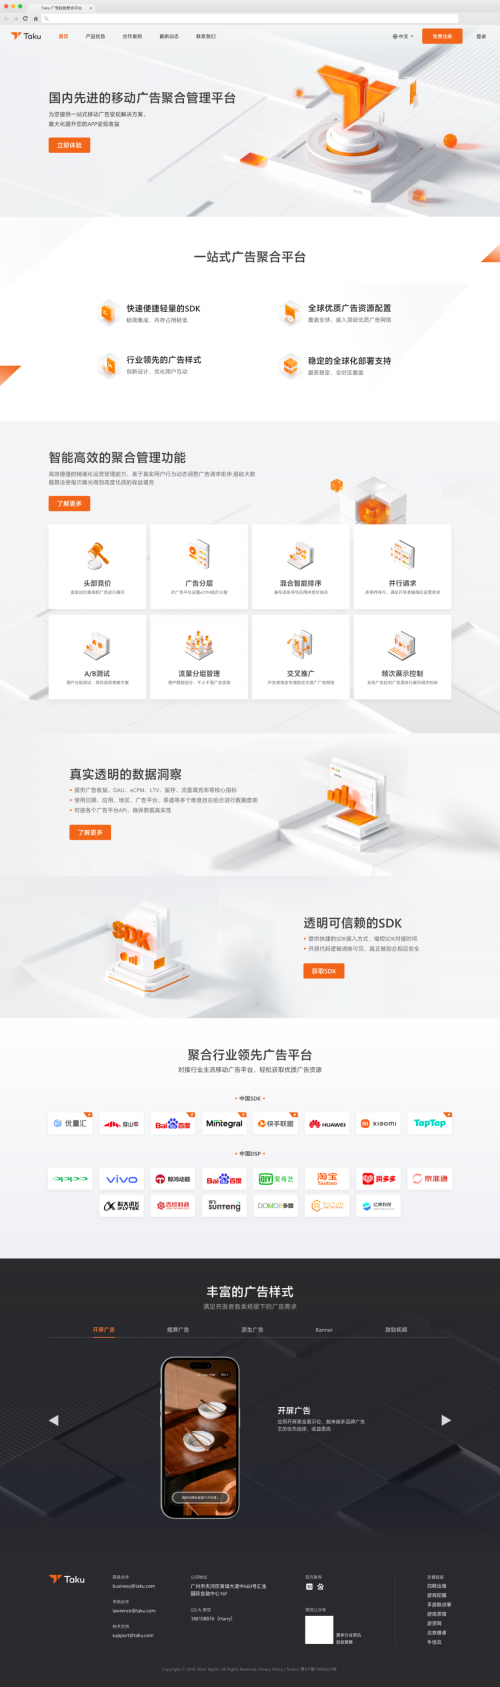 TopOn正式推出中国地区聚合广告业务品牌Taku